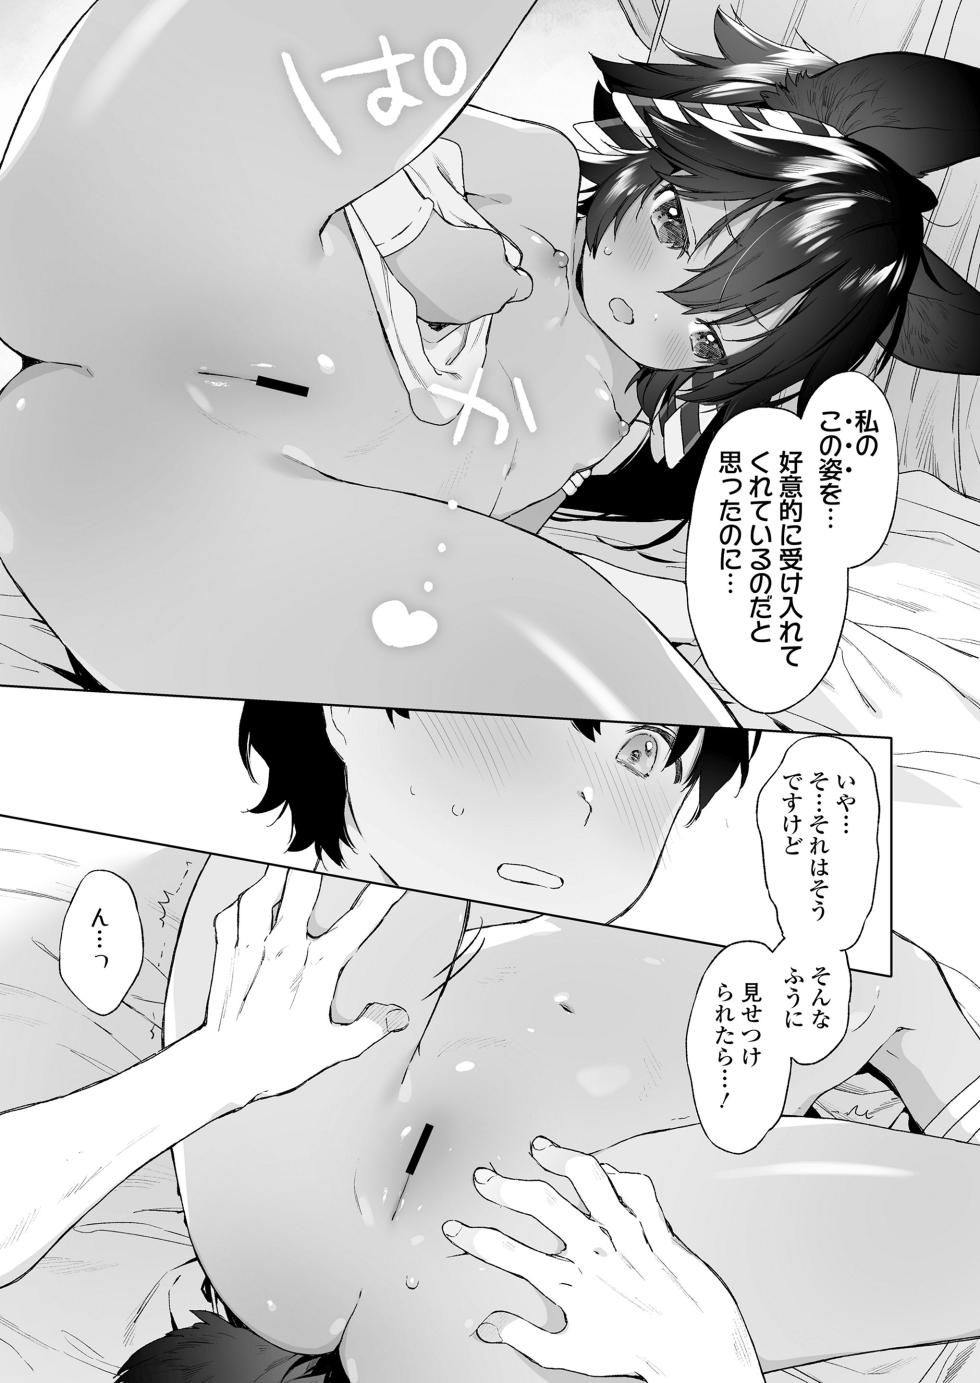 Towako 15 [Digital] - Page 13